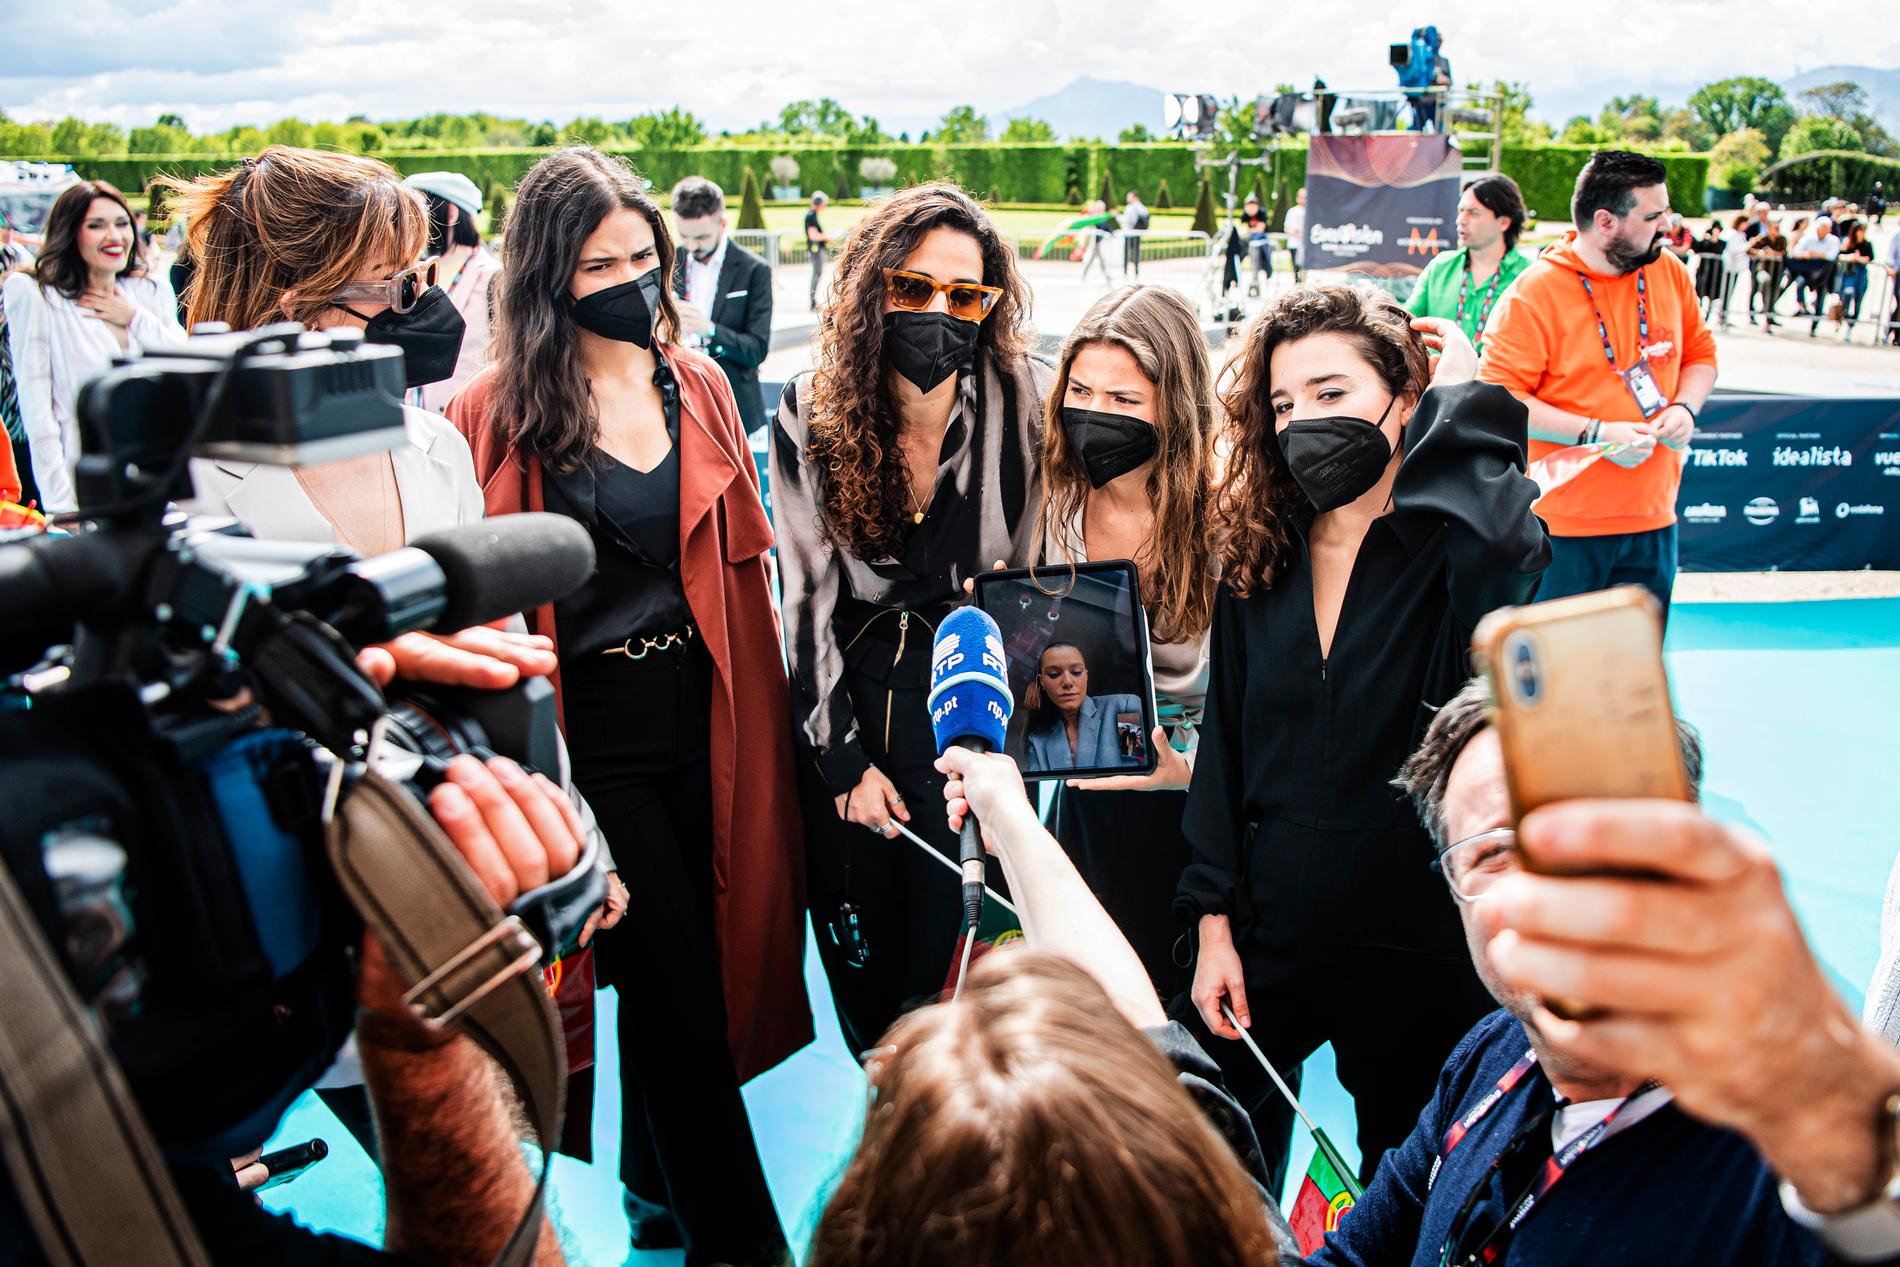 Portugals delegation bar munskydd under Eurovisions invigning, och lät sin isolerade körsångerska följa med via länk.